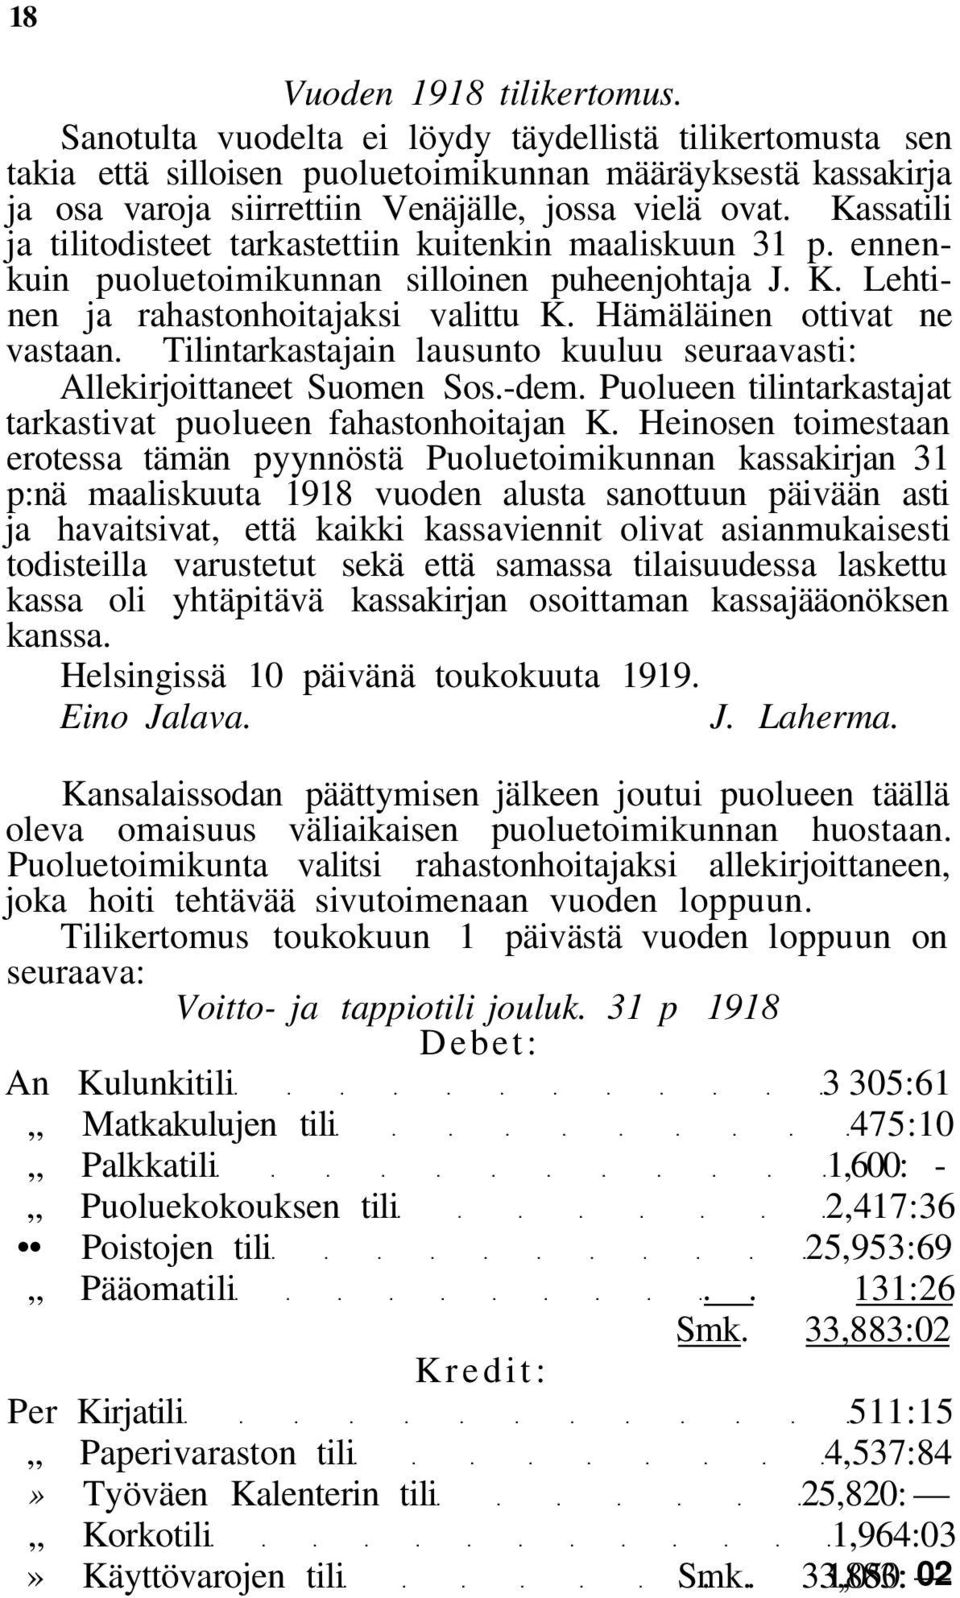 Kassatili ja tilitodisteet tarkastettiin kuitenkin maaliskuun 31 p. ennenkuin puoluetoimikunnan silloinen puheenjohtaja J. K. Lehtinen ja rahastonhoitajaksi valittu K. Hämäläinen ottivat ne vastaan.